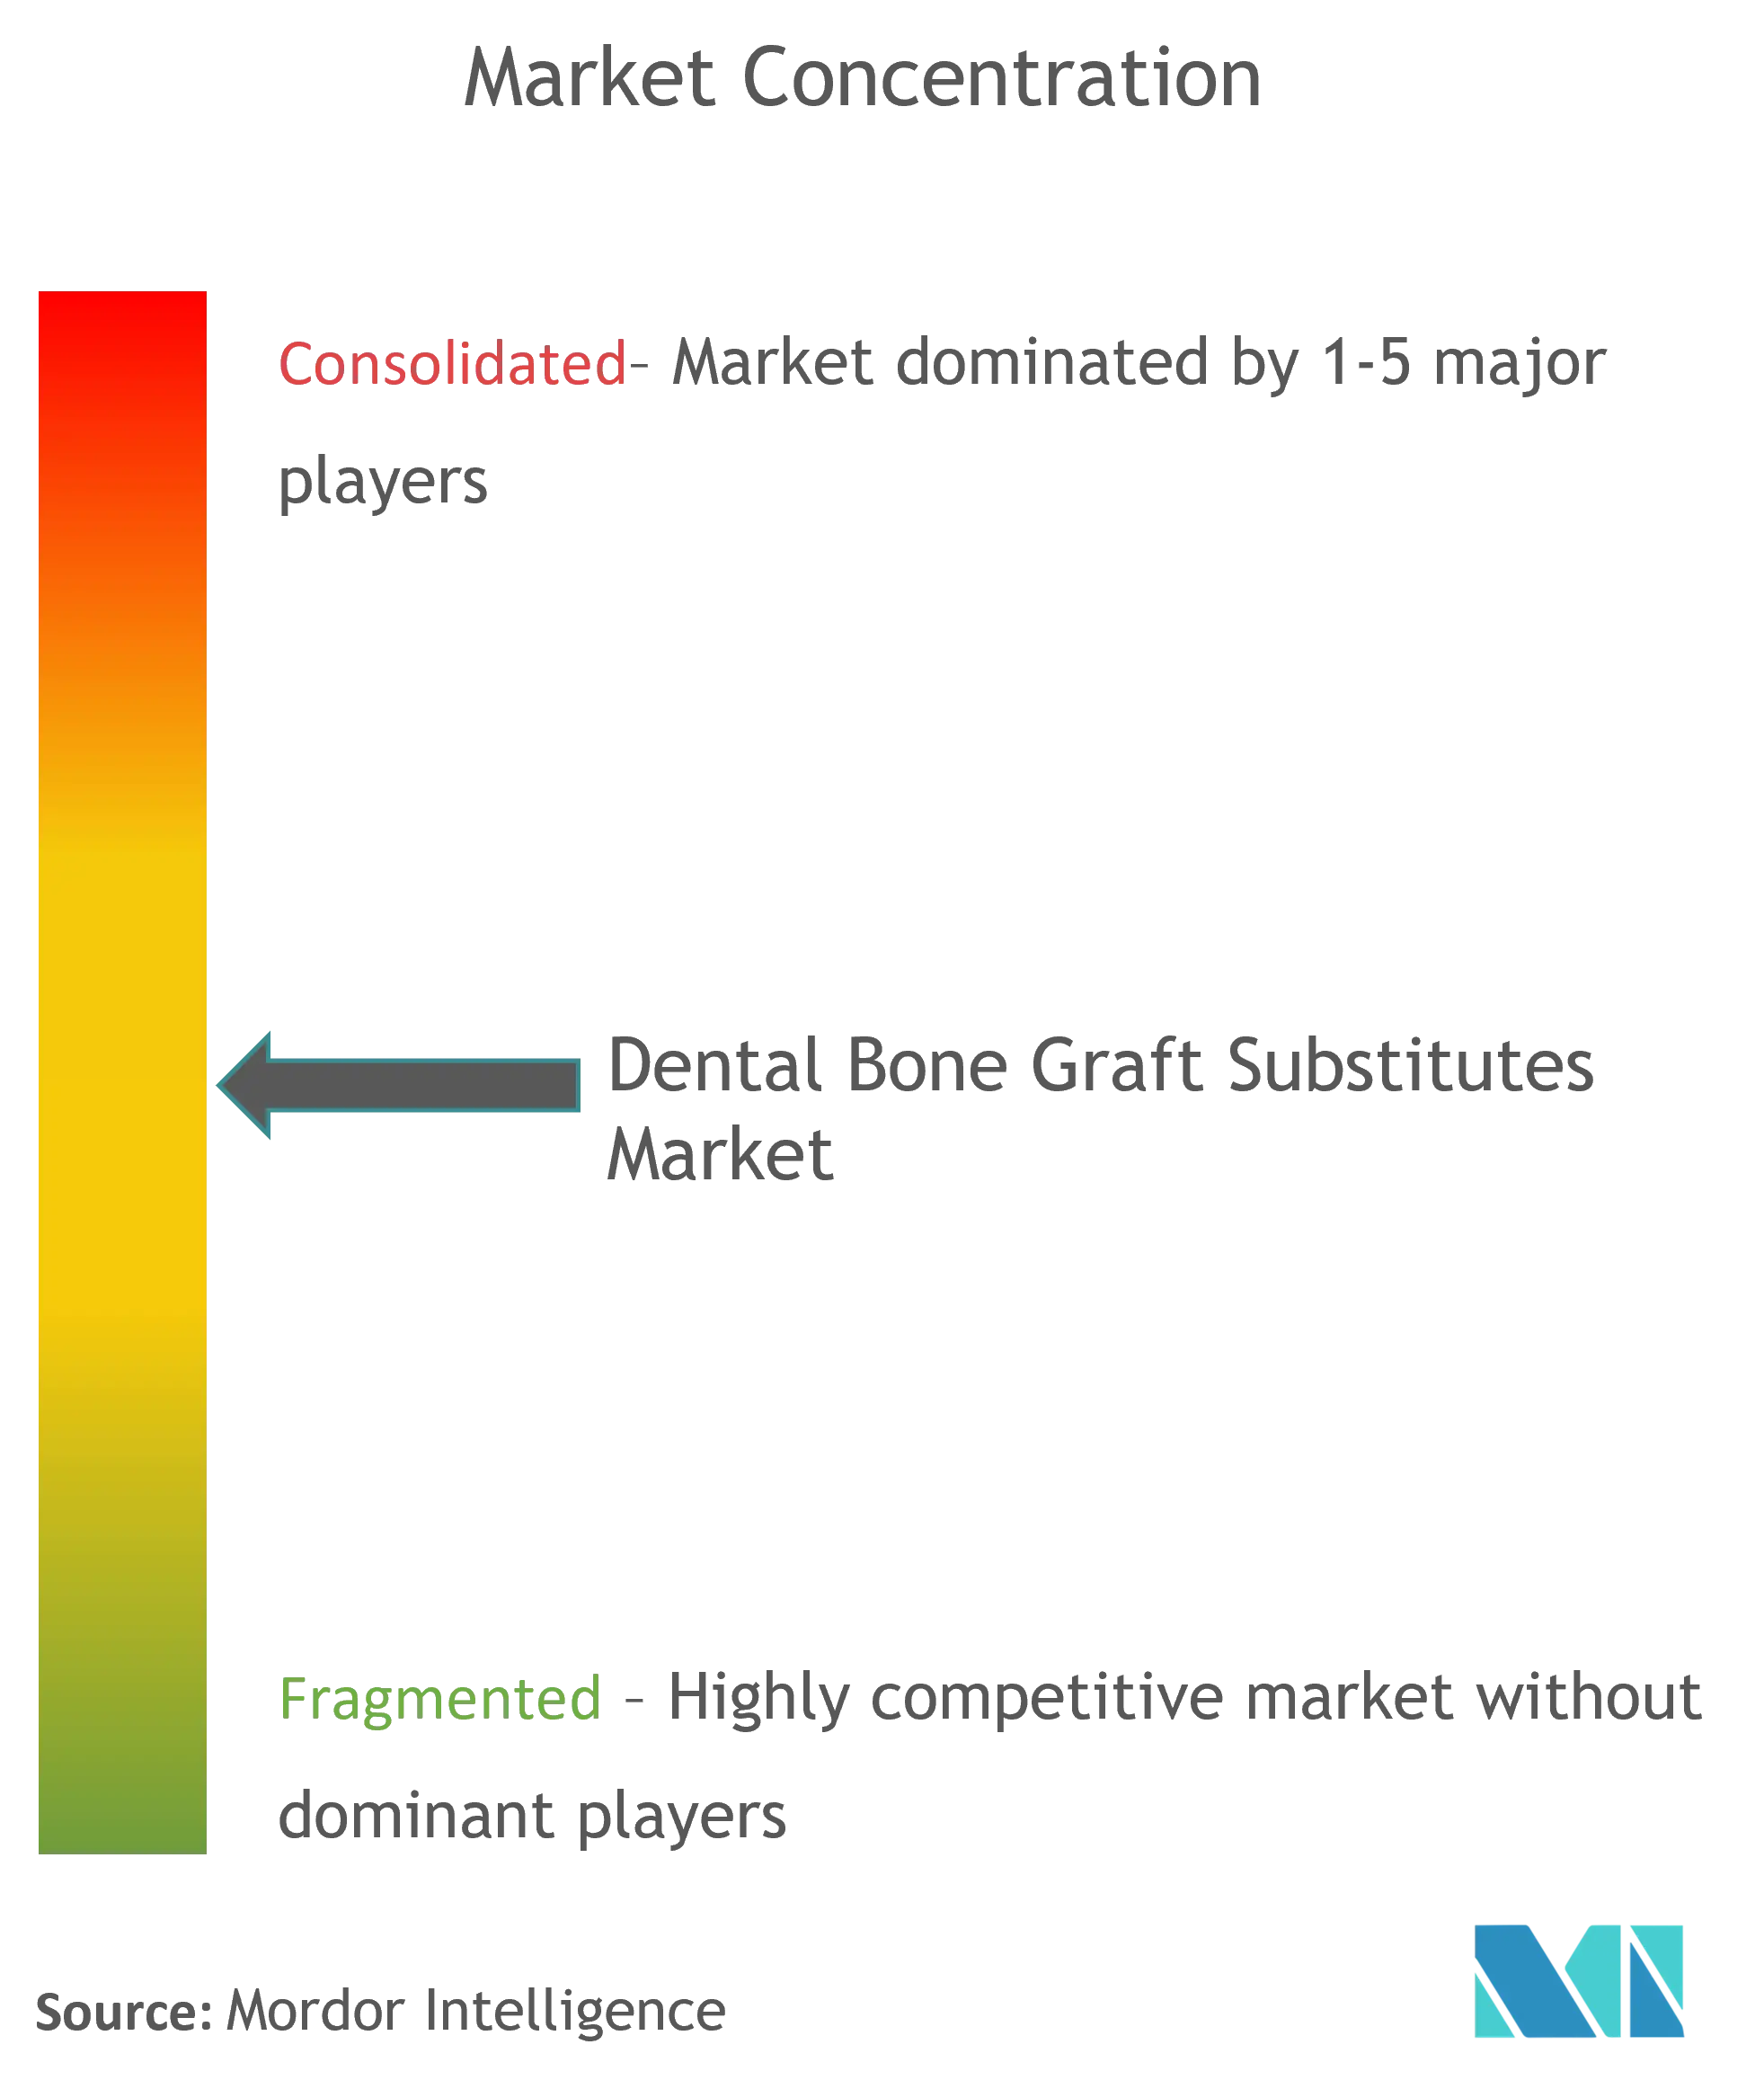 Dental Bone Graft Substitutes Market Concentration